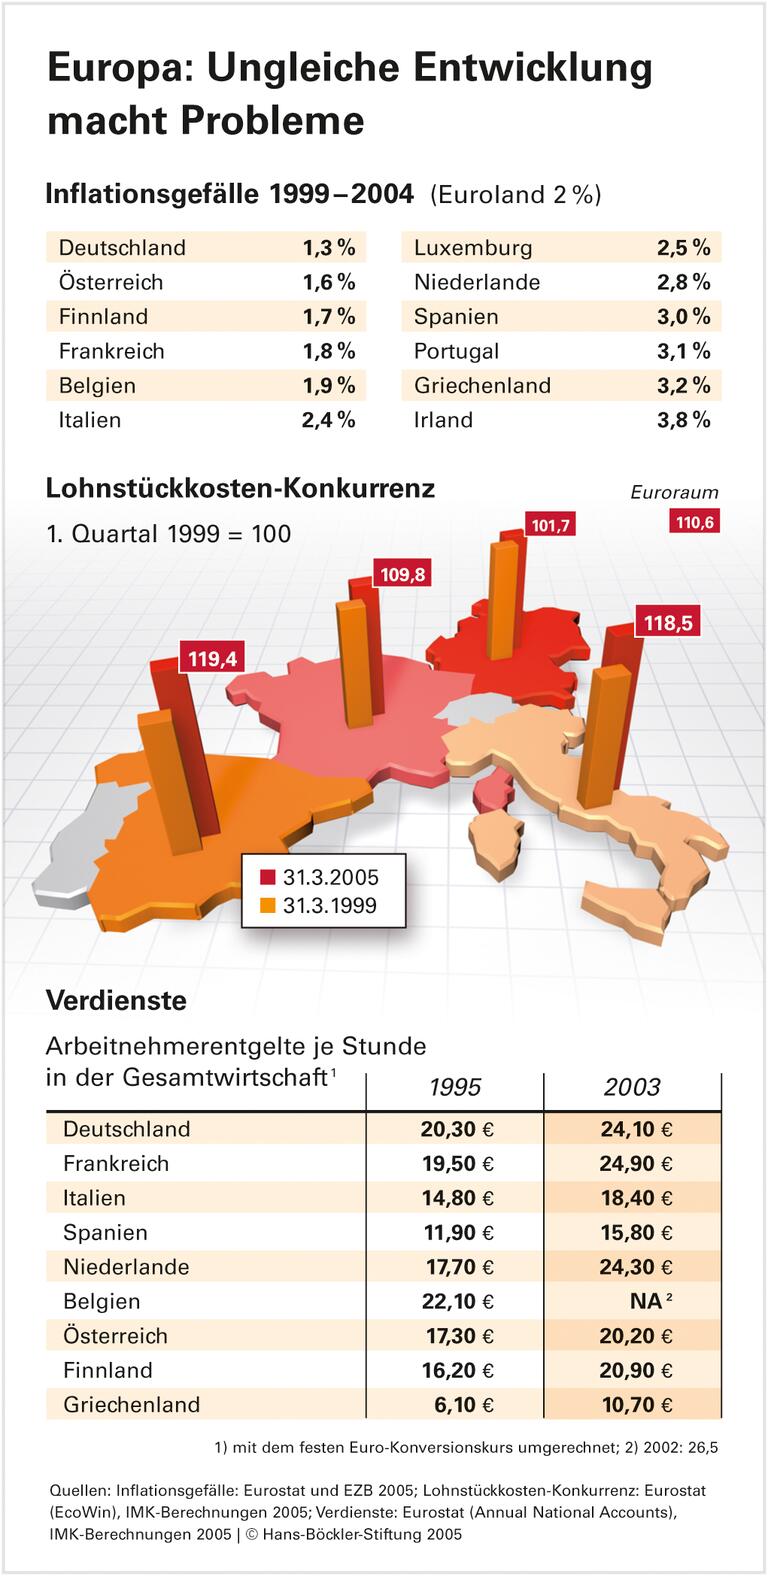 Deutsche Lohnzurückhaltung bremst Europa